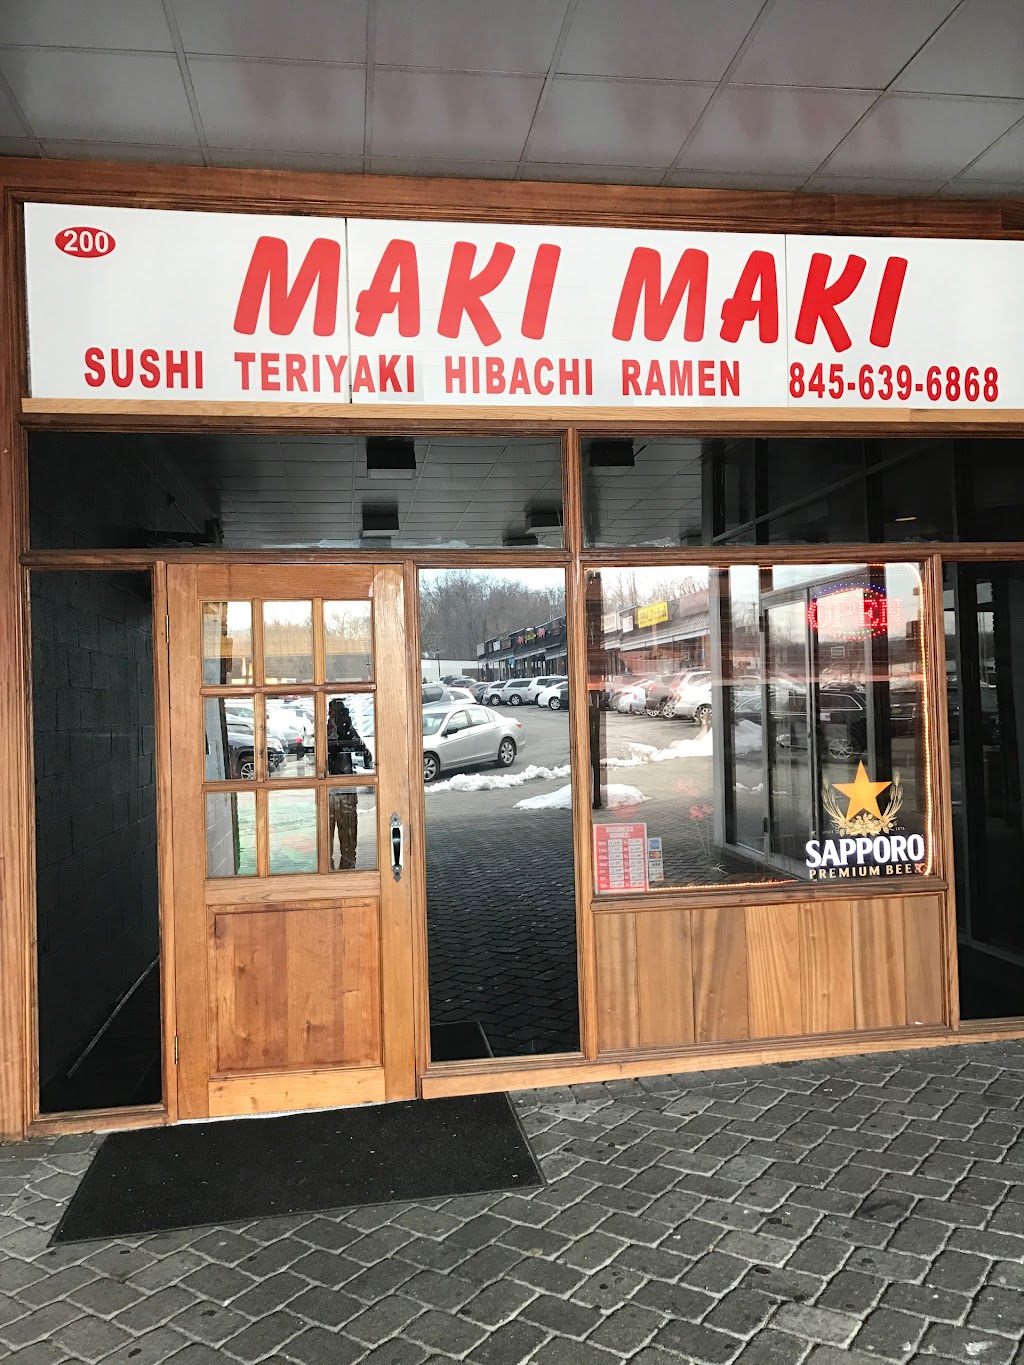 Maki Maki | 200 S Main St, New City, NY 10956 | Phone: (845) 639-6868